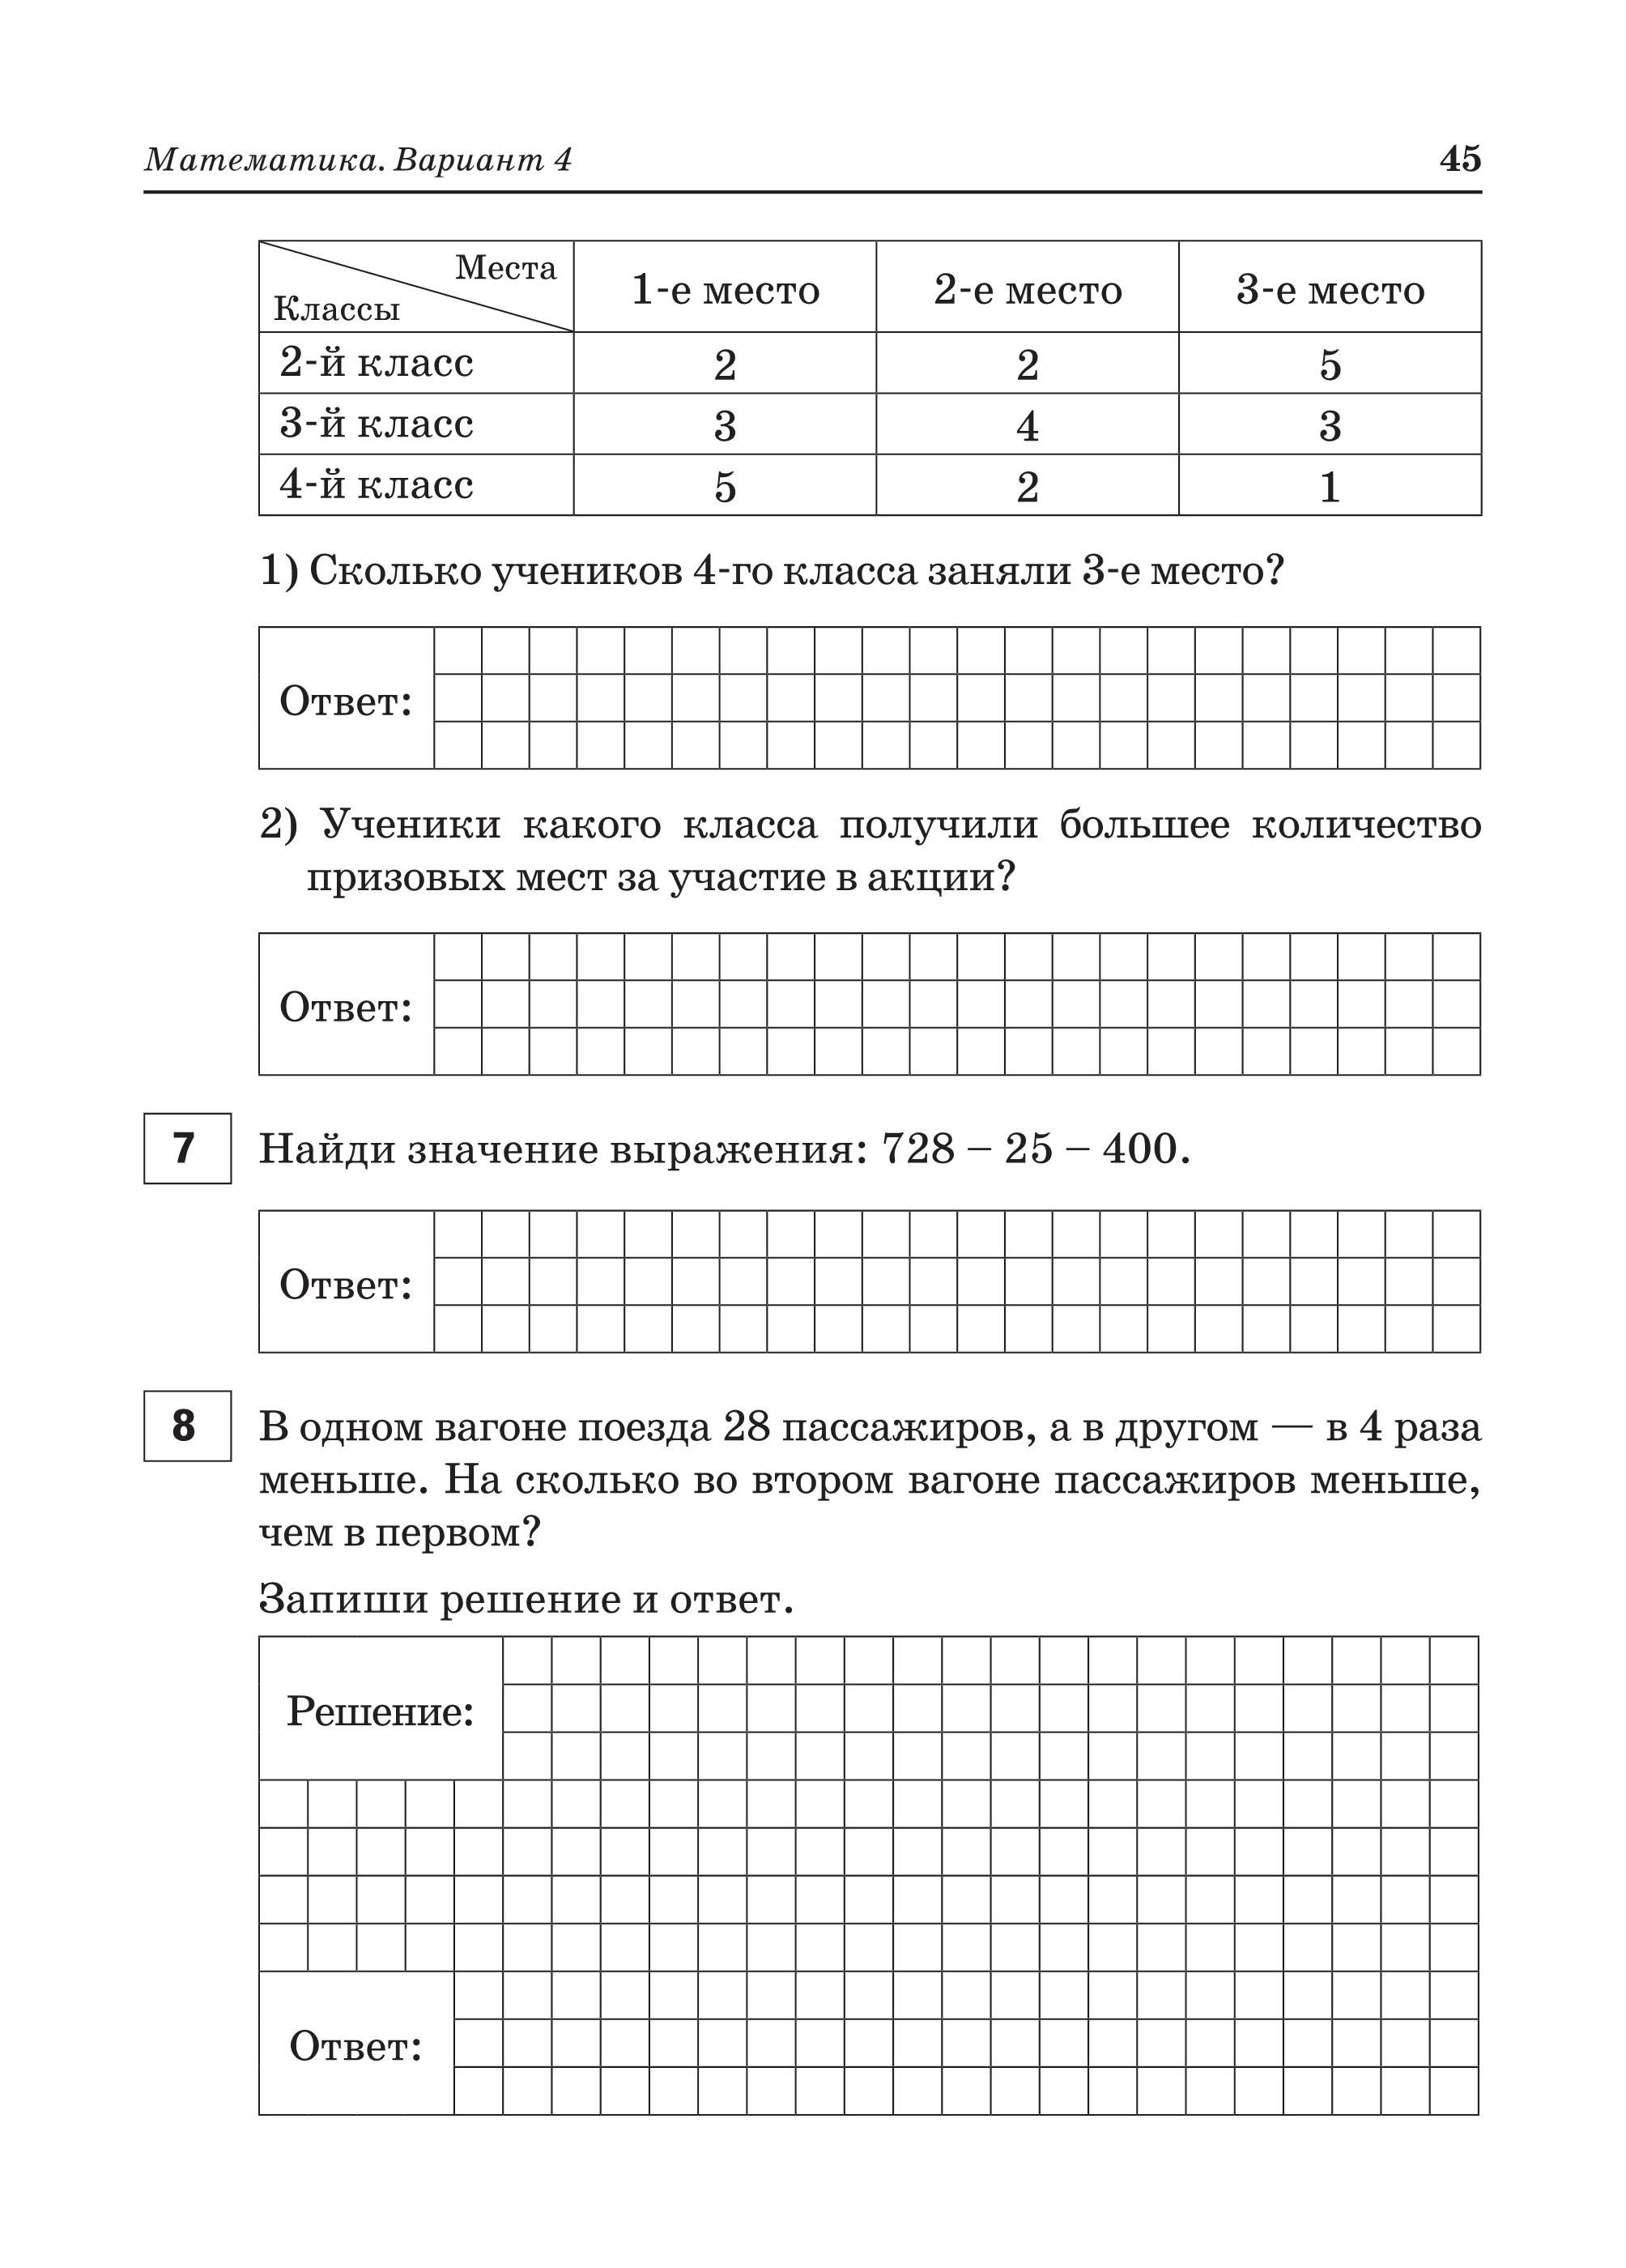 ВПР. 2-й класс. Русский язык, математика, окружающий мир. 15 тренировочных вариантов